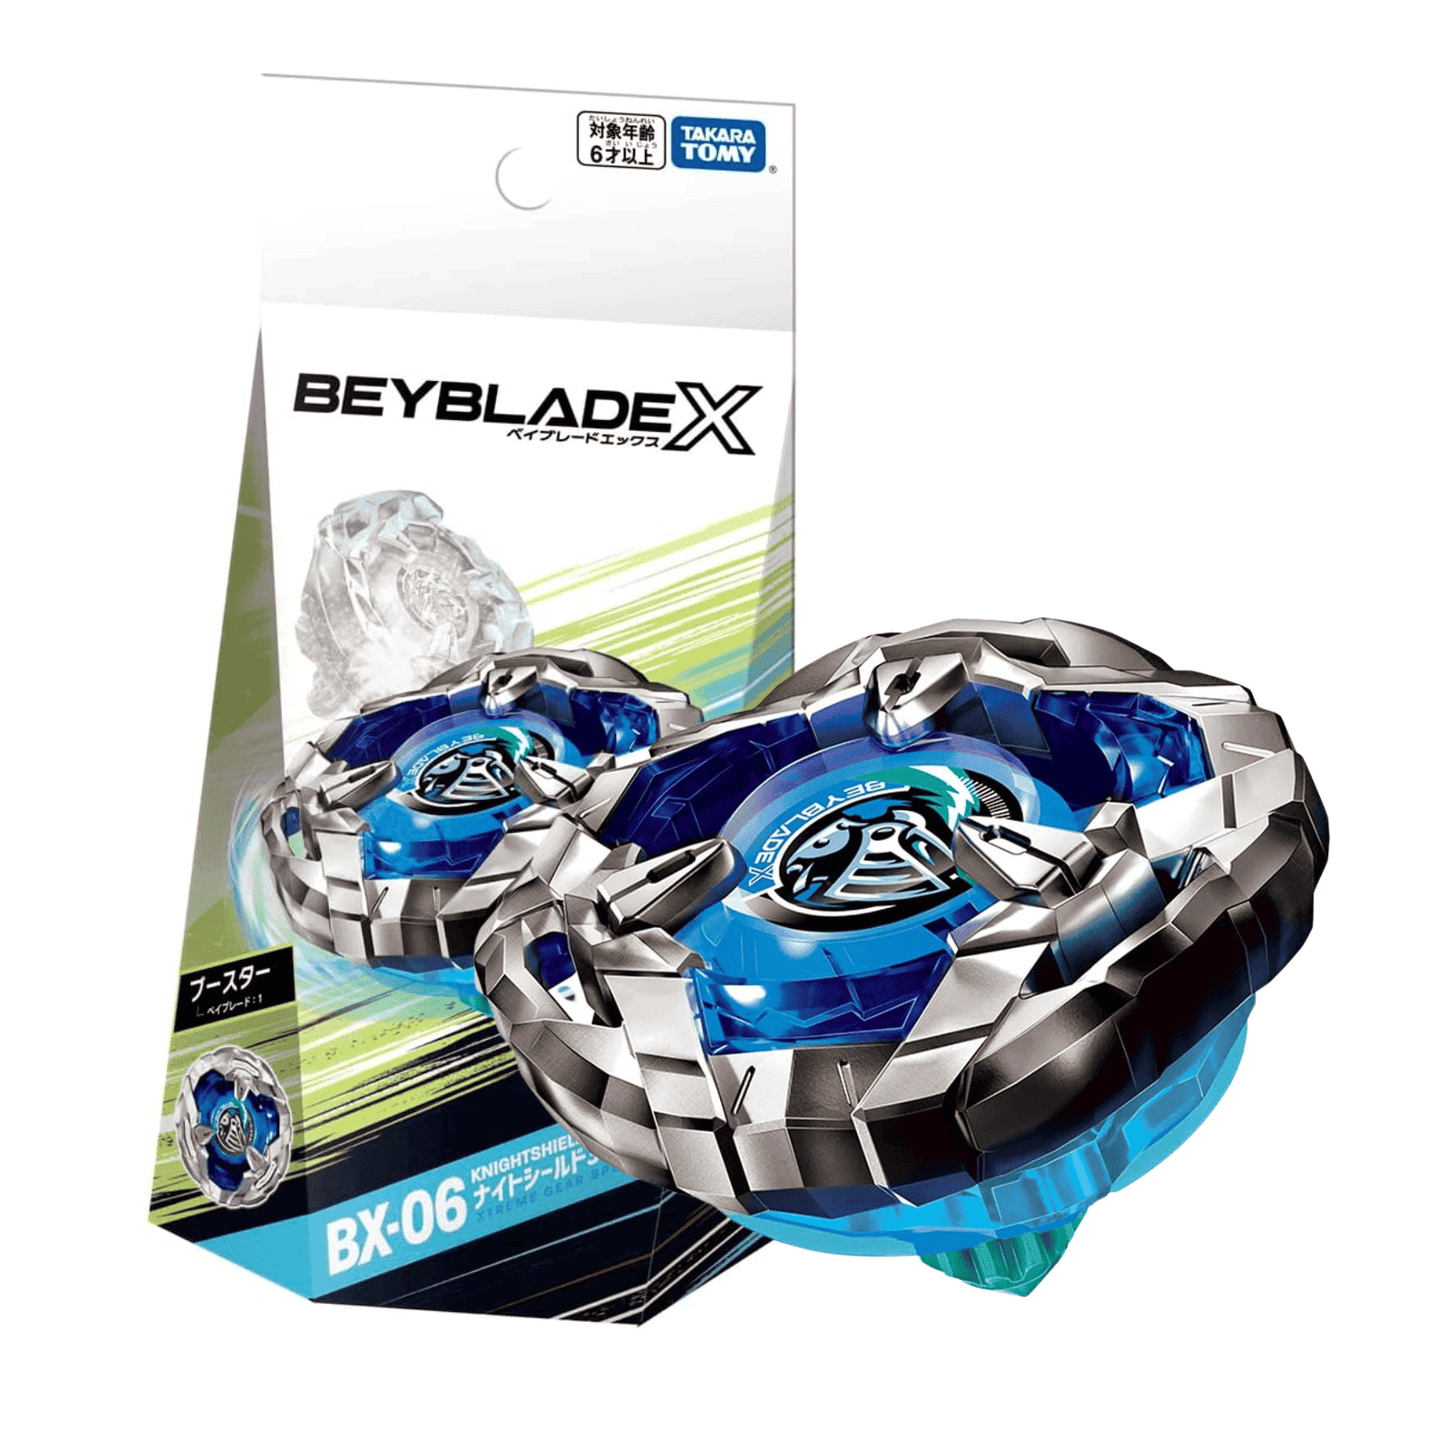 Beyblade X BX-06: บูสเตอร์อัศวินชิลด์ 3-80N ChitoroShop